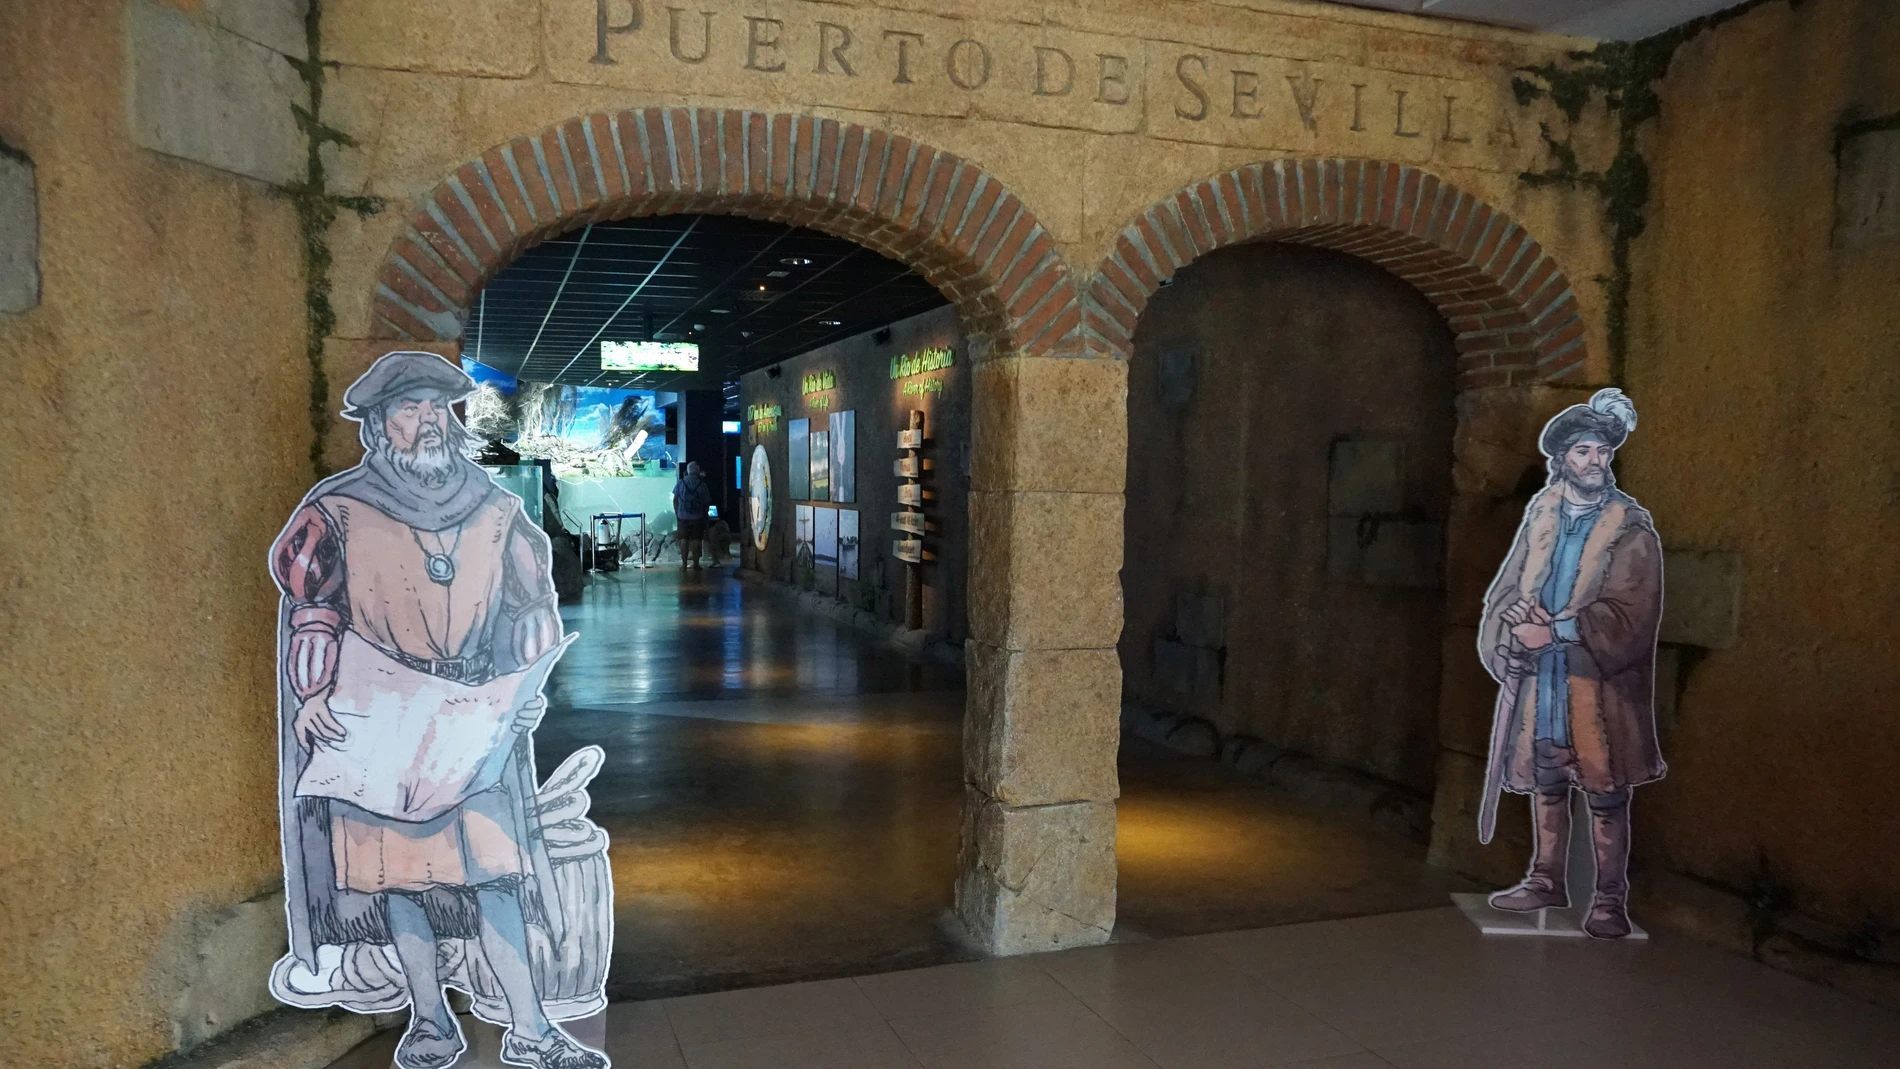 El Acuario de Sevilla recrea hasta el más mínimo detalle la primera circunnavegación del planeta realizada por Magallanes y Elcano